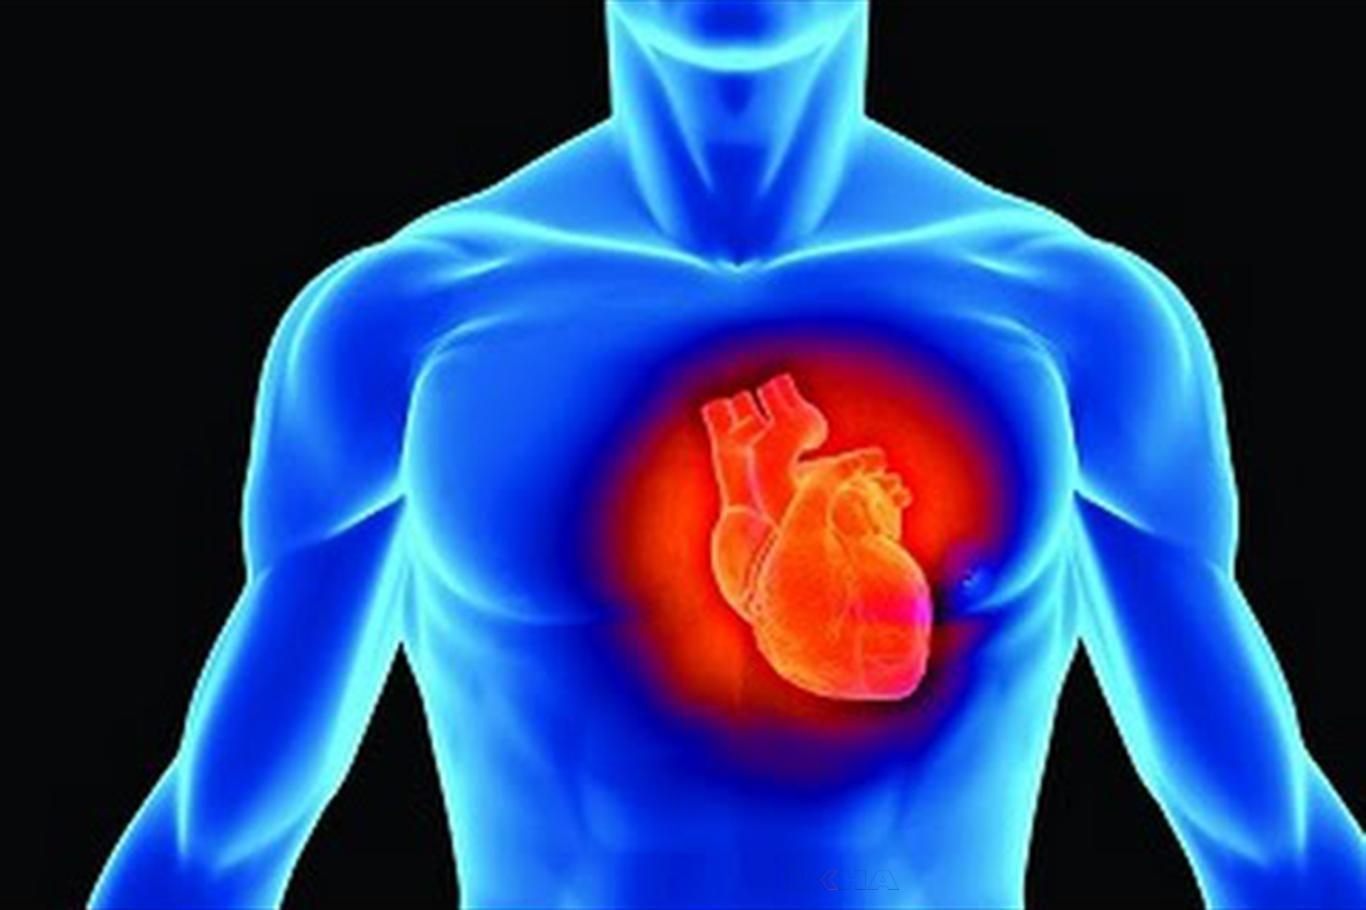 "Dünya nüfusunun yüzde 25’i kalp damar hastalıklarının etkisi altında"